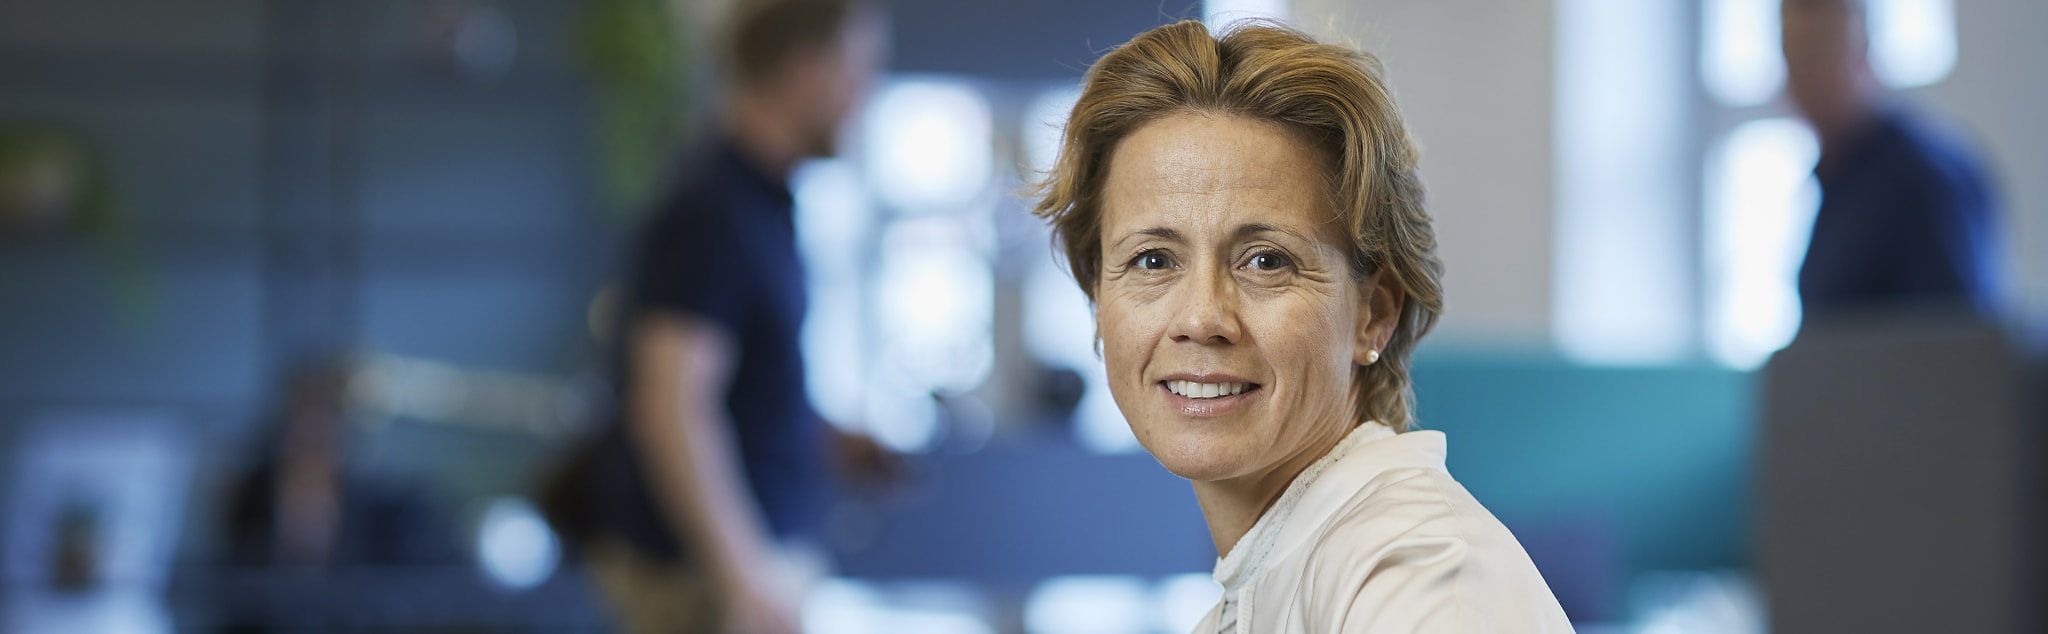 Lise Klevan Dybwad er leder for Workplace Strategy i CBRE Norge